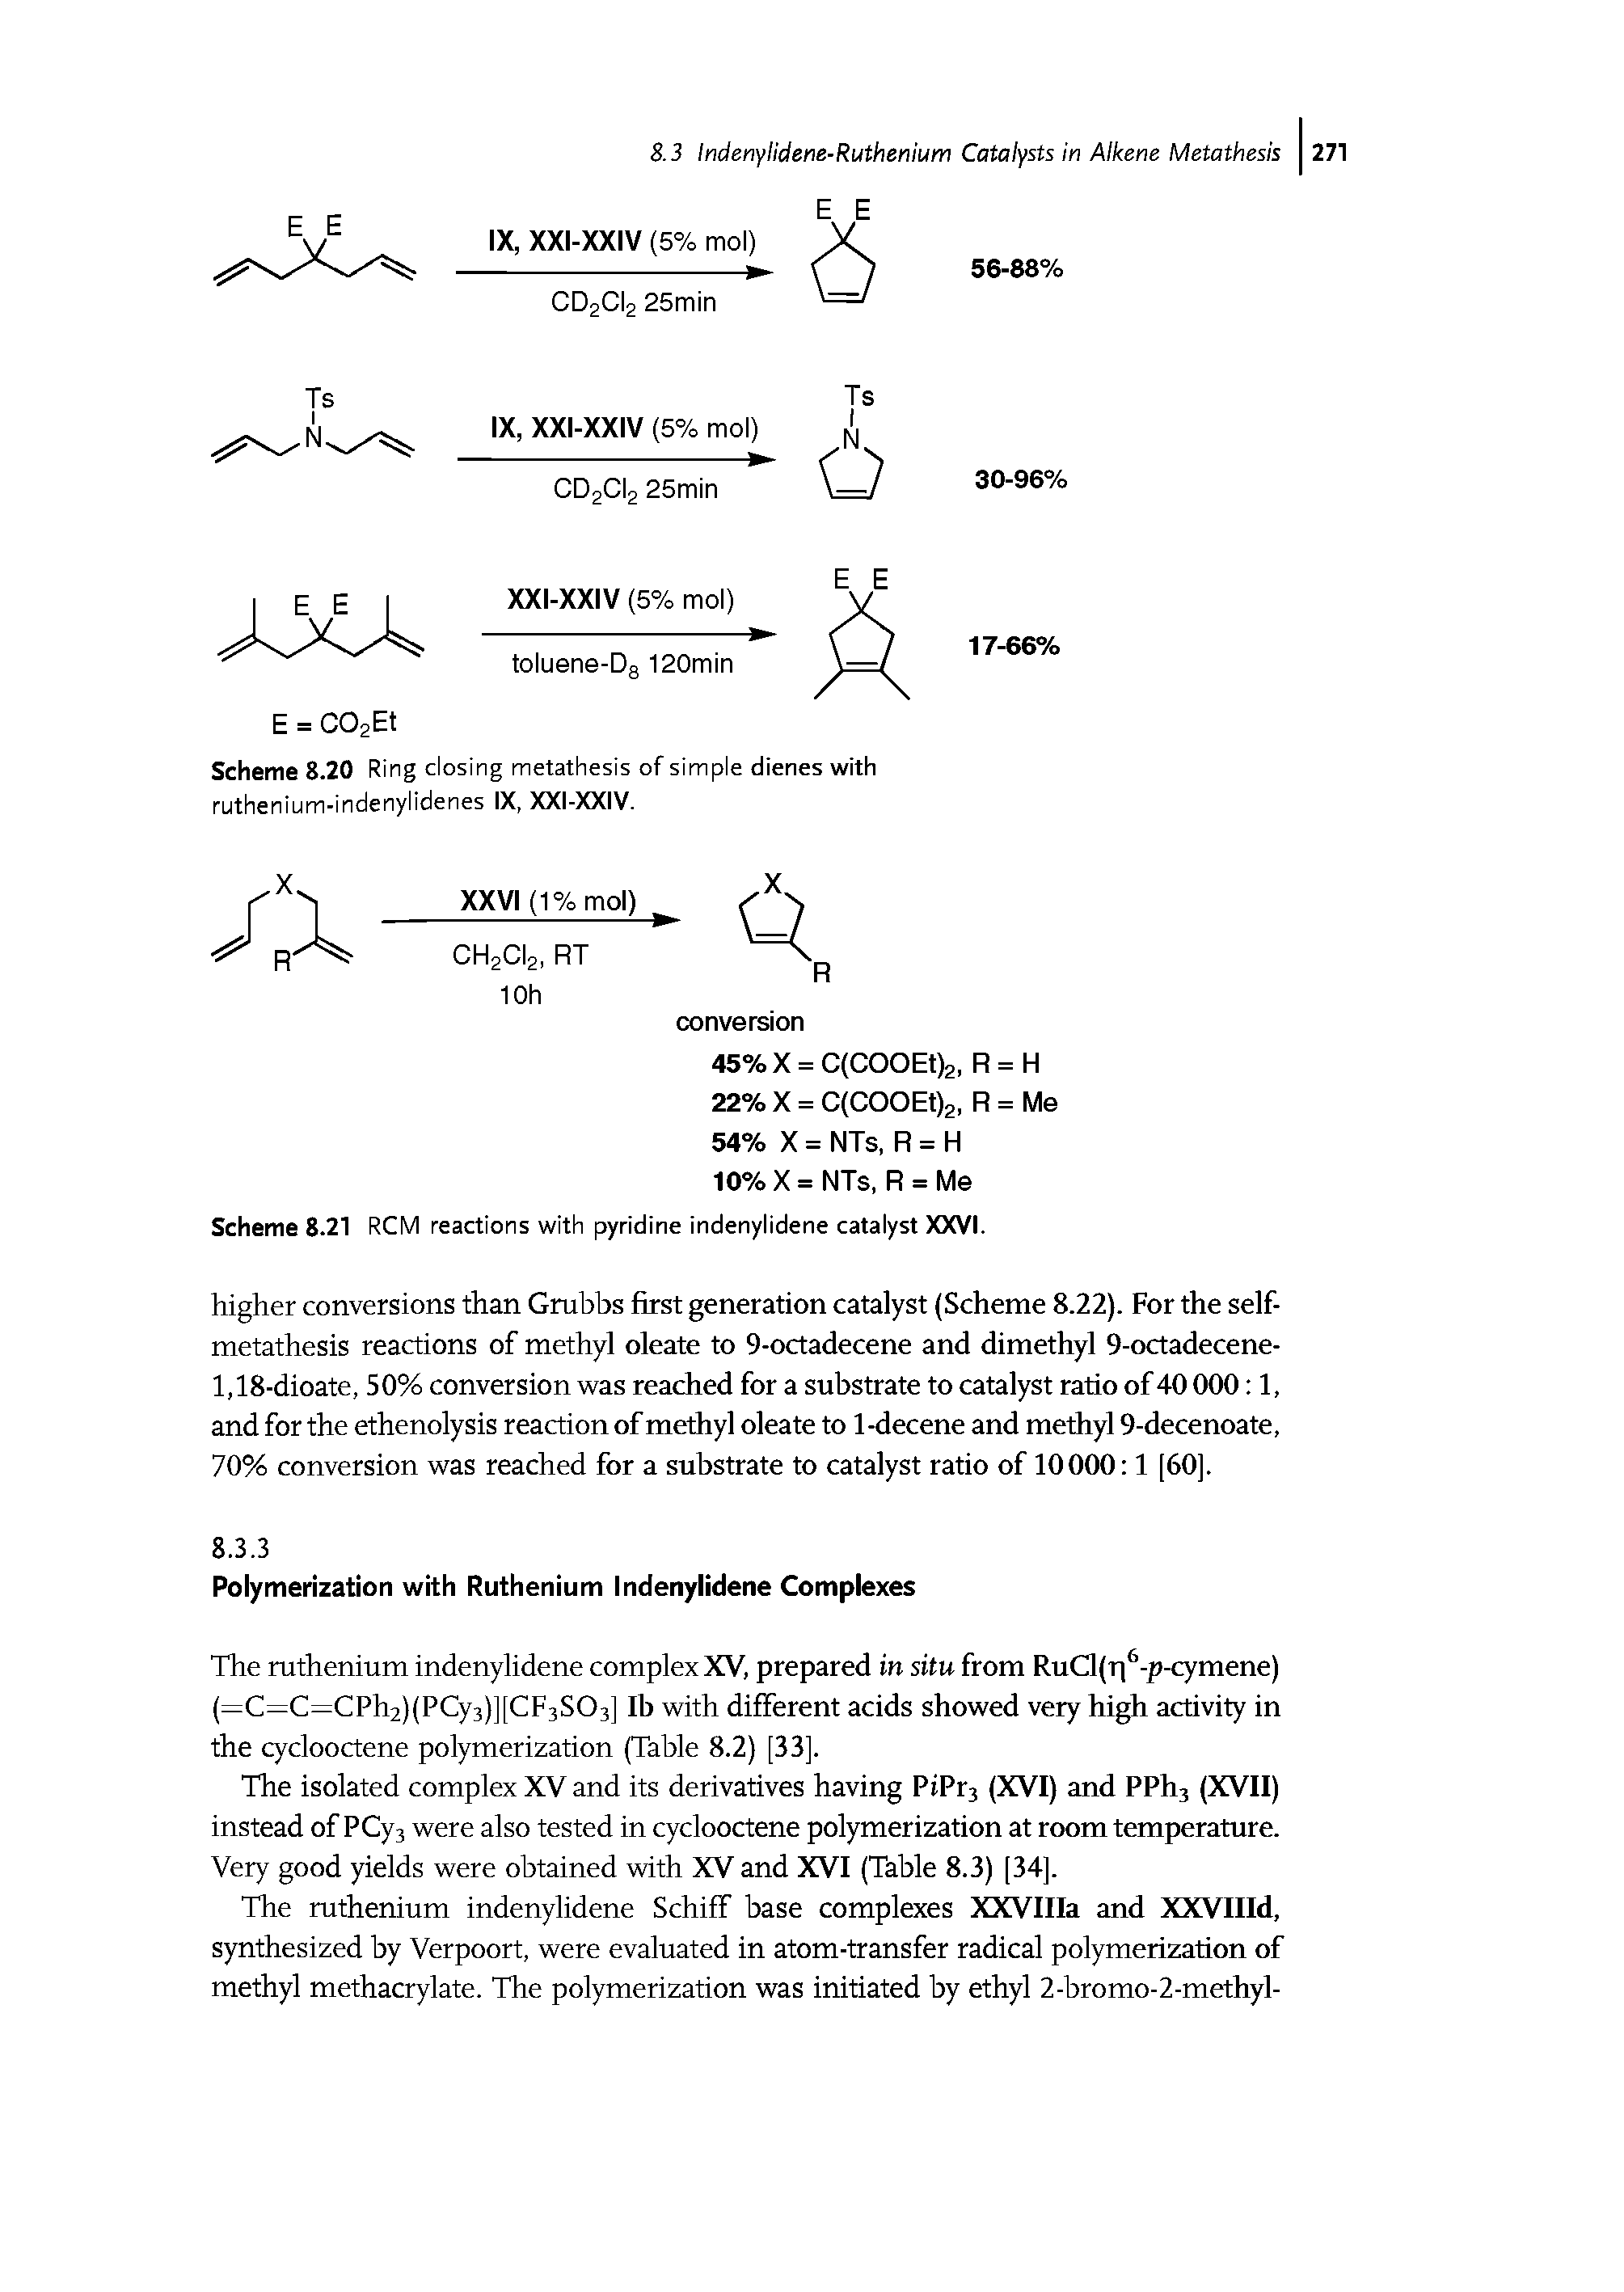 Scheme 8.21 RCM reactions with pyridine indenylidene catalyst XXVI.